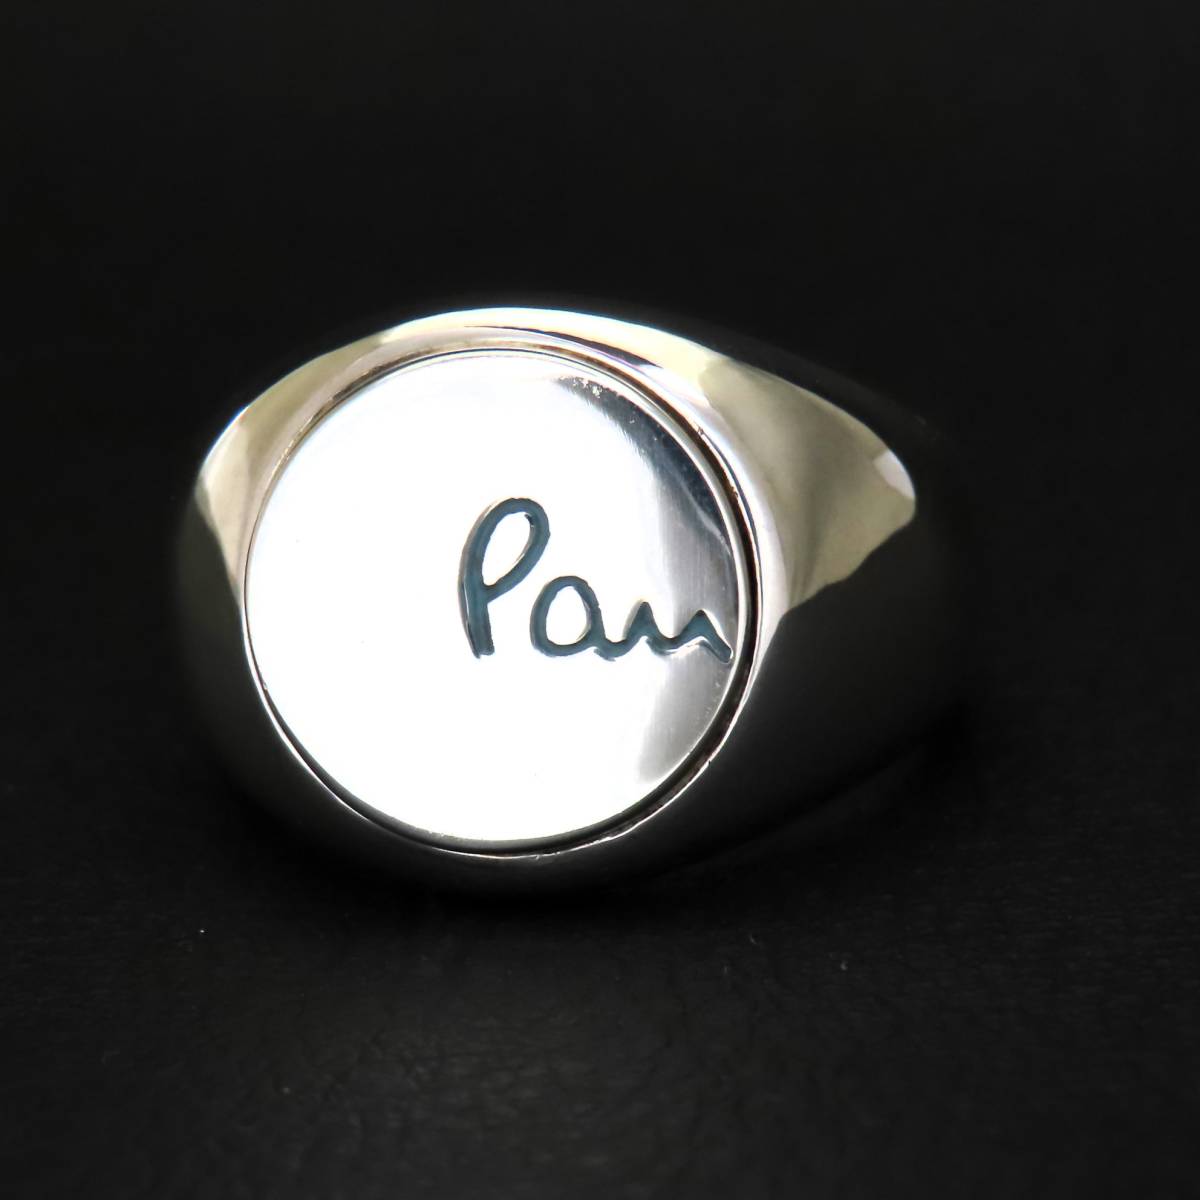 新品同様 美品 Paul Smith ポールスミス 丸型印台 リング 指輪 メンズ シルバー925 20号 14.4g